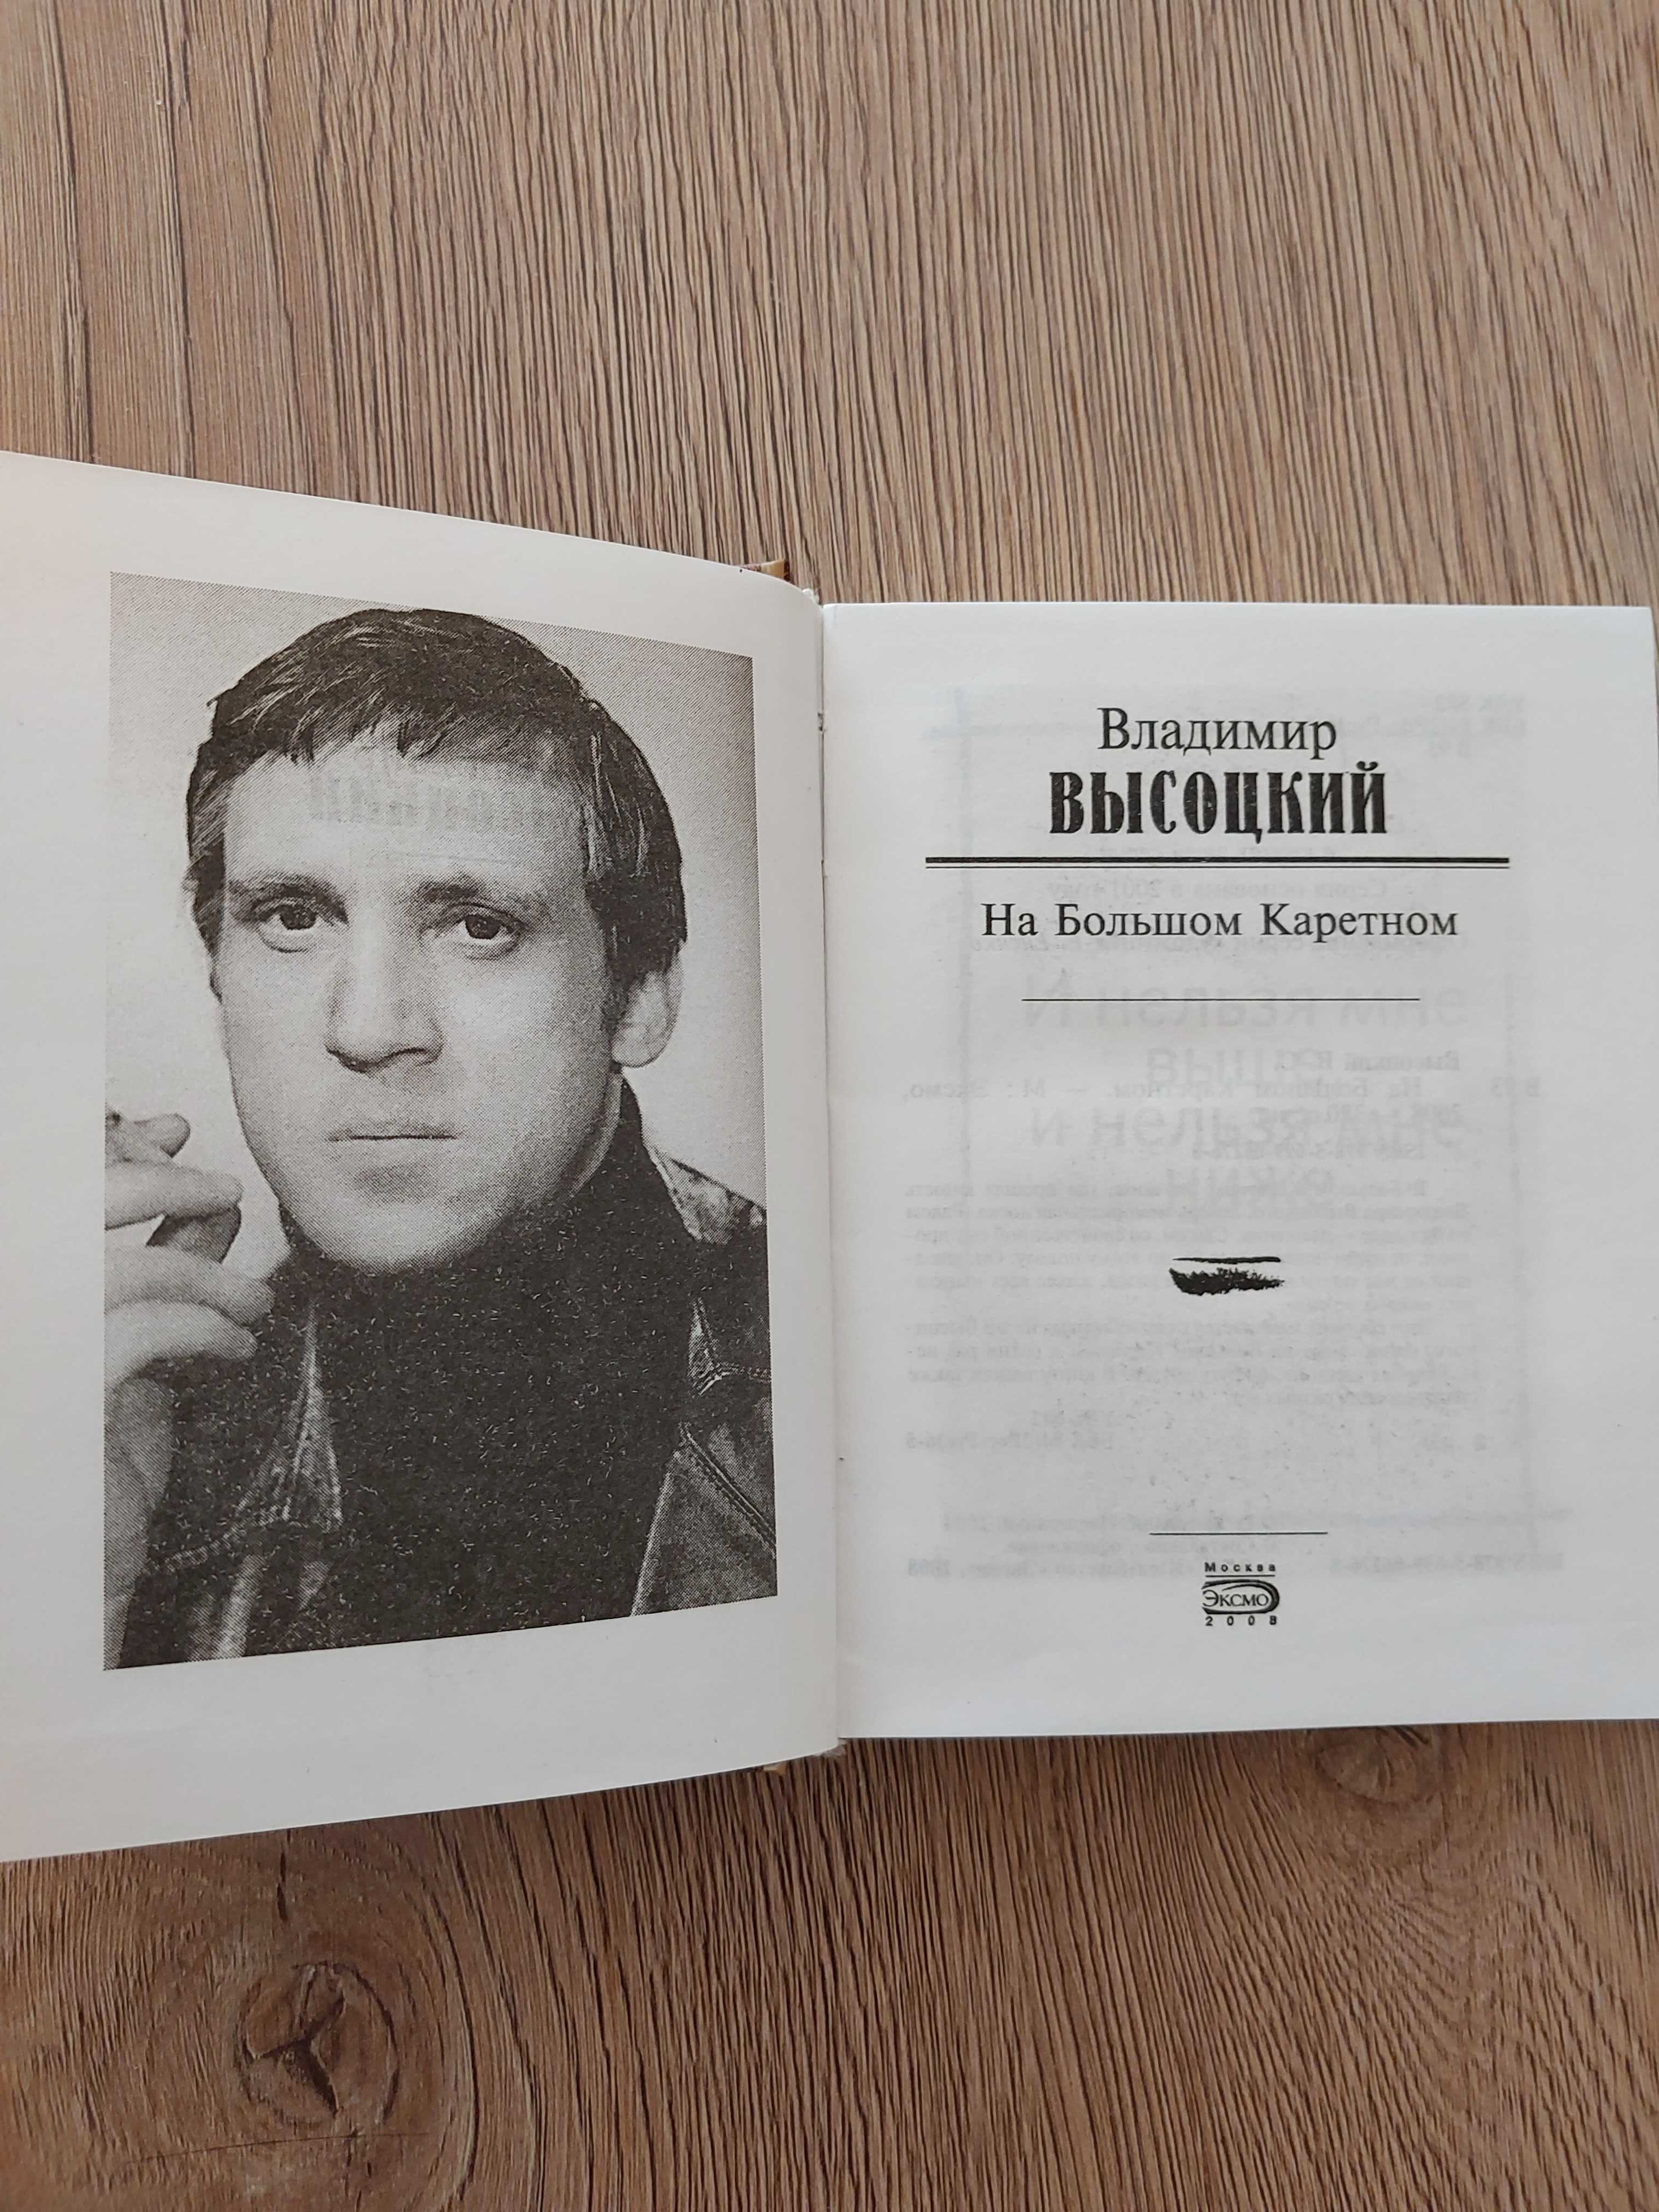 Sprzedam książki w języku rosyjskim